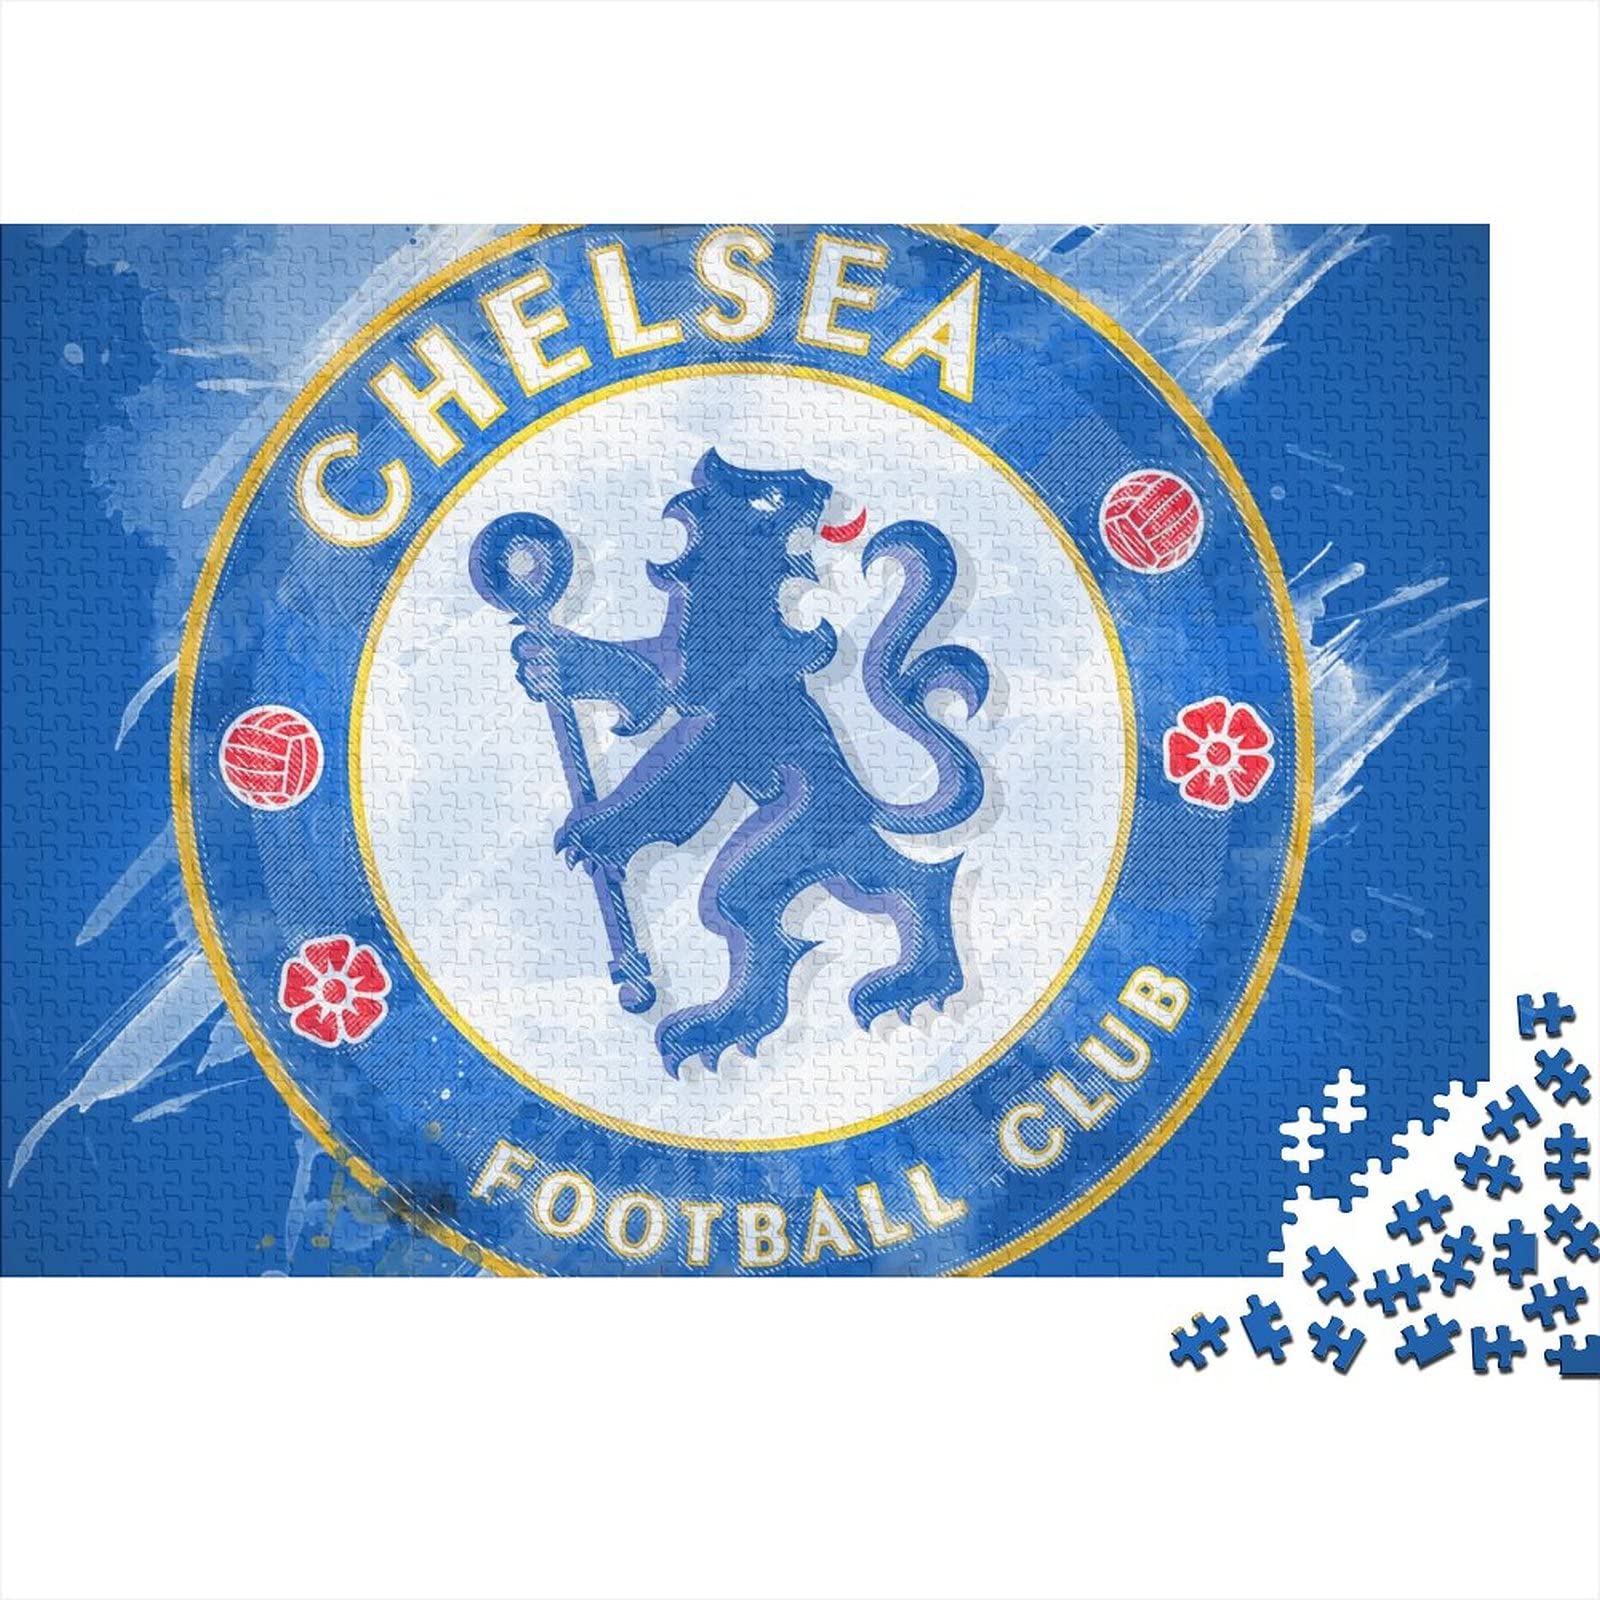 Chelsea Logo Puzzle Für Erwachsene,Puzzle 500 Teile Herausforderndes Puzzles Fußball,Geschicklichkeitsspiel Für Die Ganze Familie,Bunte Fliesen Spielzeug Spiel,Geschenke 500pcs (52x38cm)